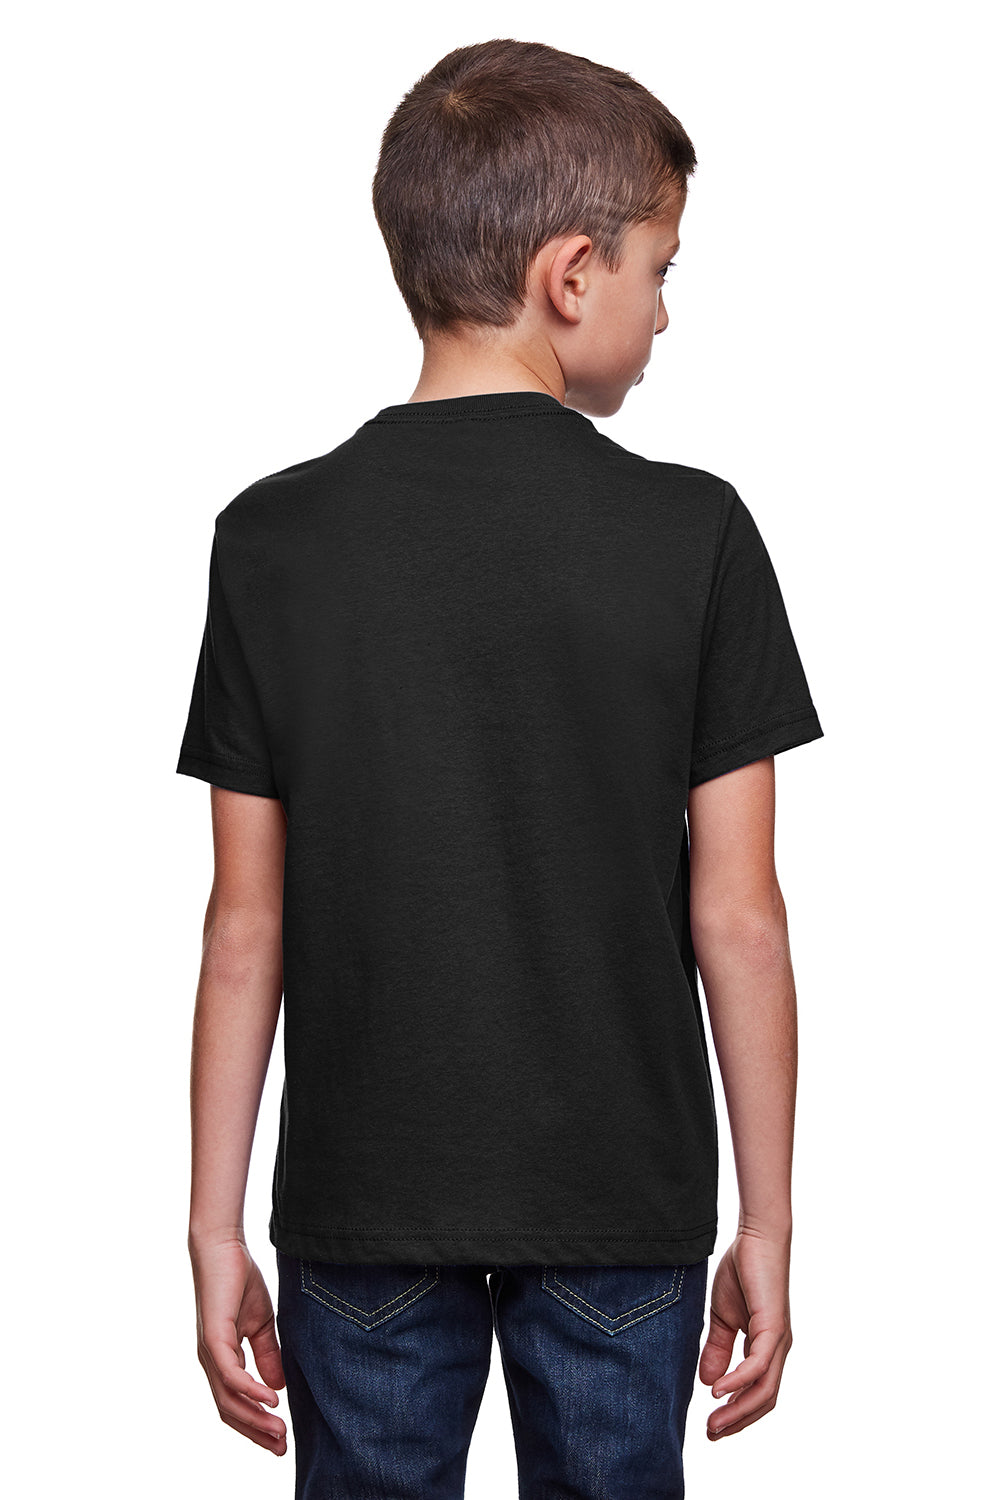 Next Level 4212 Youth Eco Performance Moisture Wicking Short Sleeve Crewneck T-Shirt Black Back